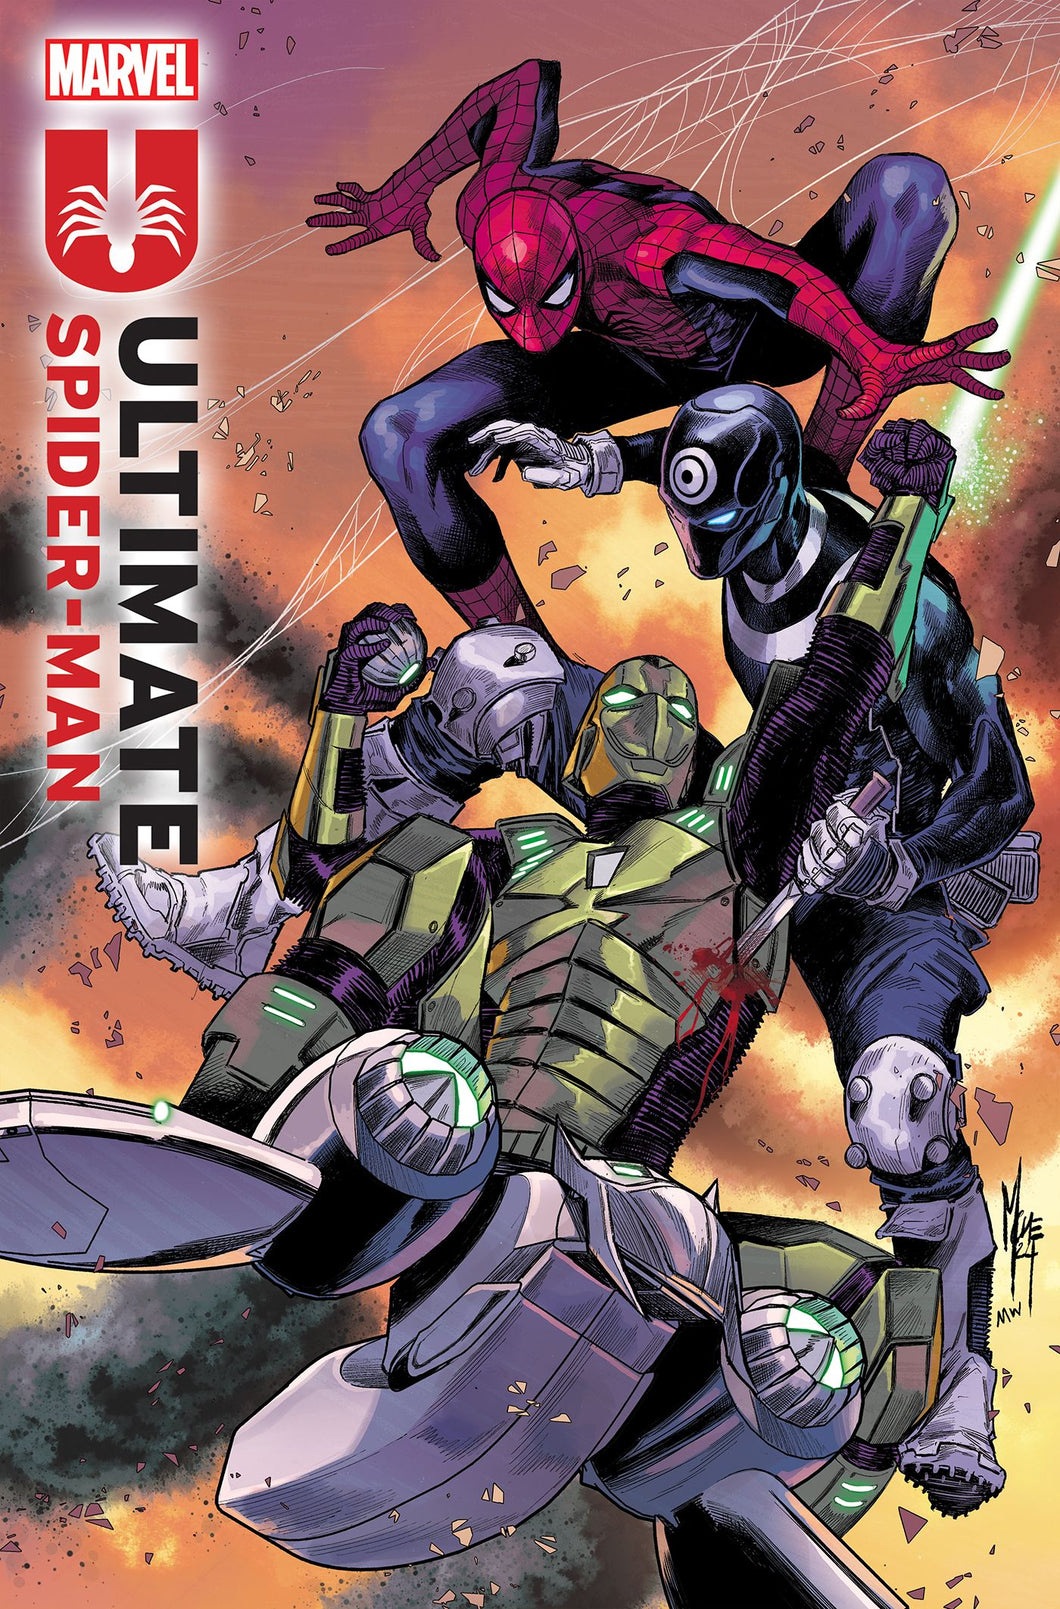 ULTIMATE SPIDER-MAN #3 (MARCO CHECCHETTO COVER)